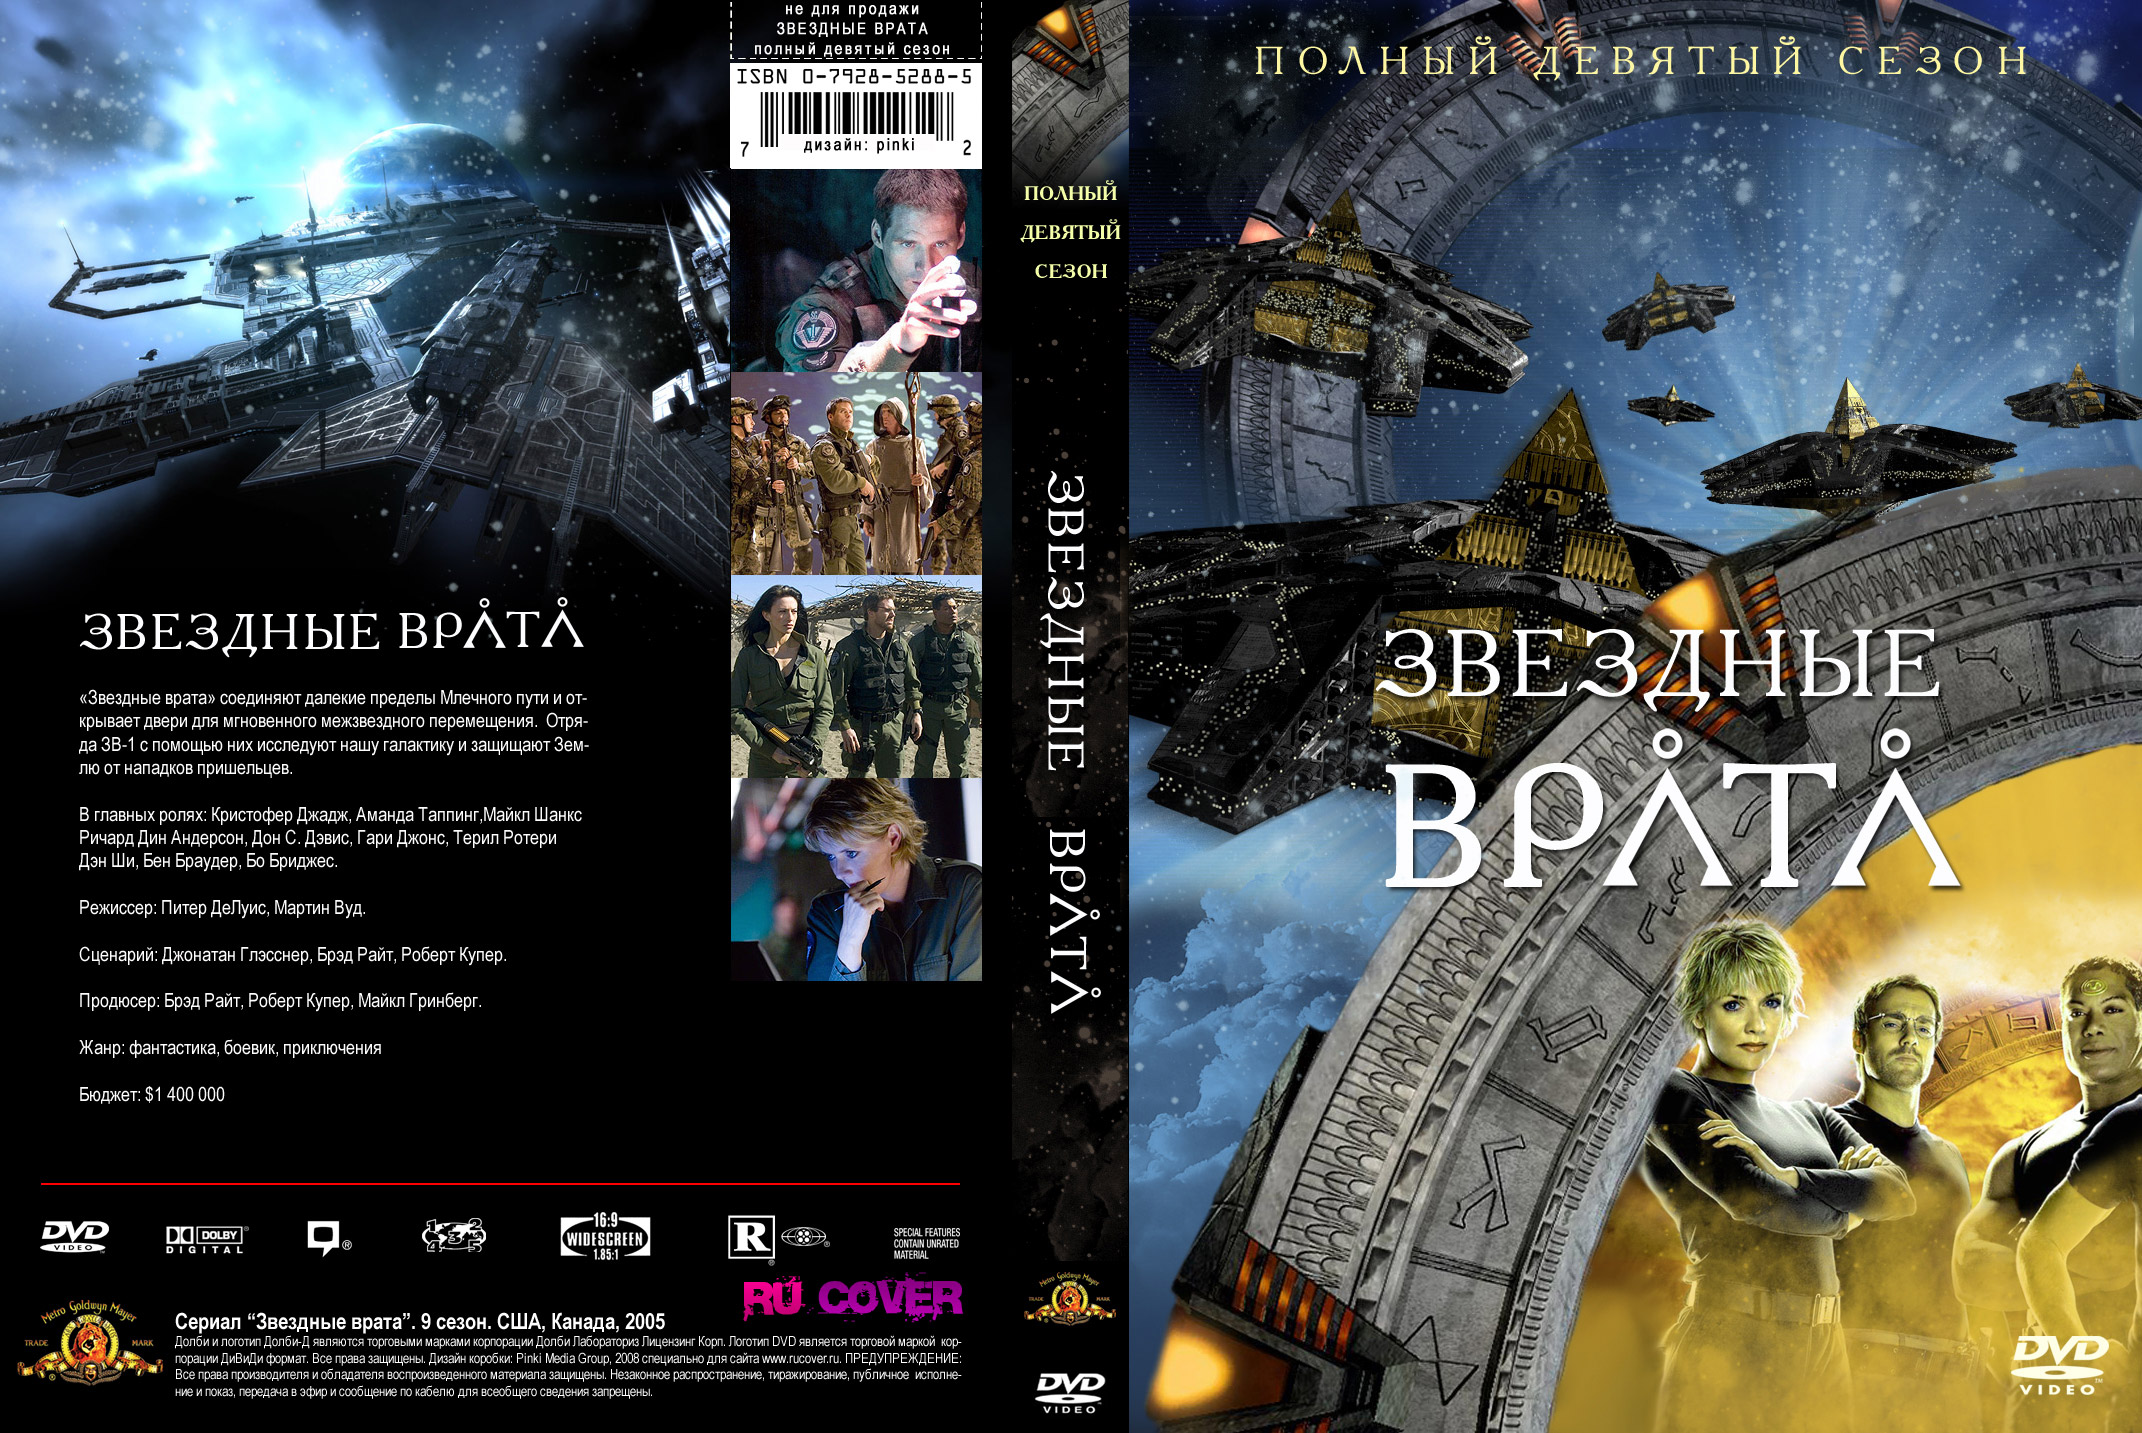 2012 обложка. Обложка диска. Обложка для двд Atlantis 2013. Обложка DVD полноразмерная. Обложка DVD вспомнить всё.